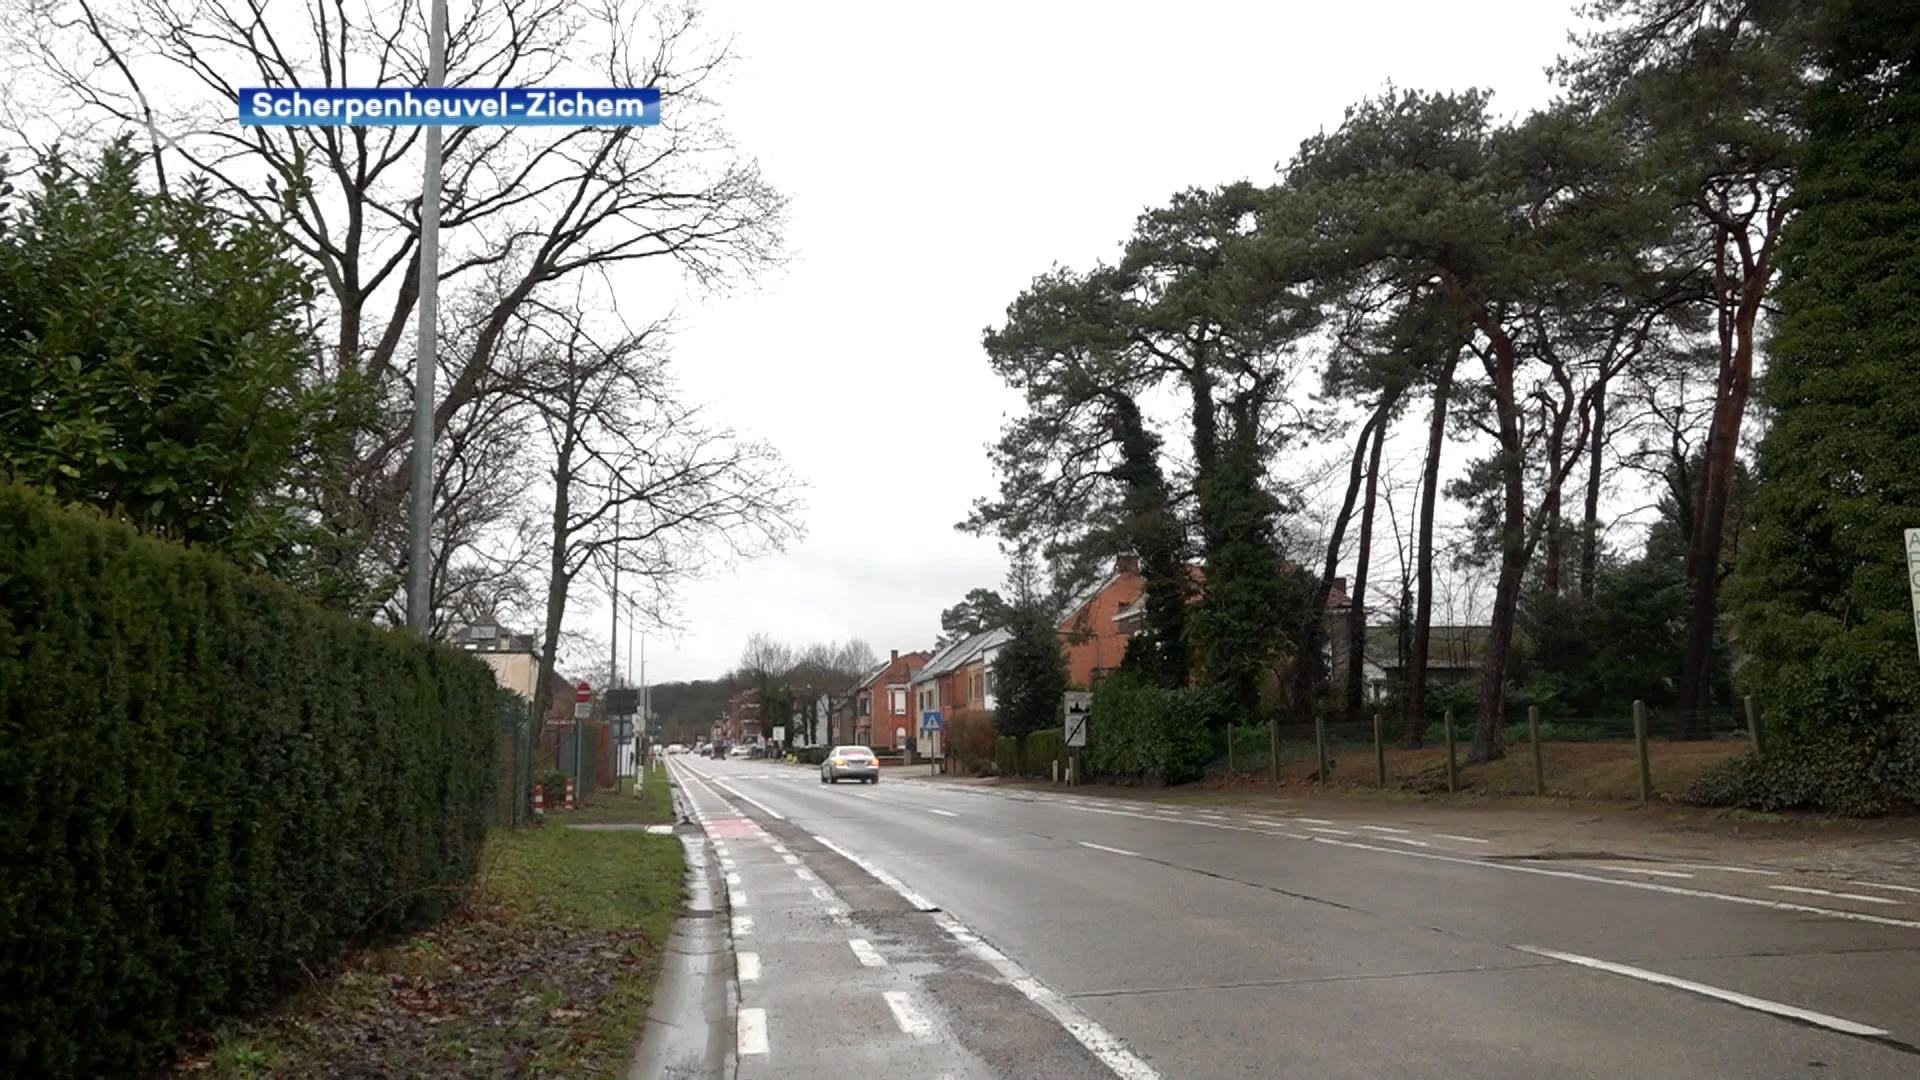 Wegen en Verkeer start volgende maand met onderhoudswerken aan Westelsebaan in Averbode: "Nieuw asfalt en nieuwe, hogere fietspaden"